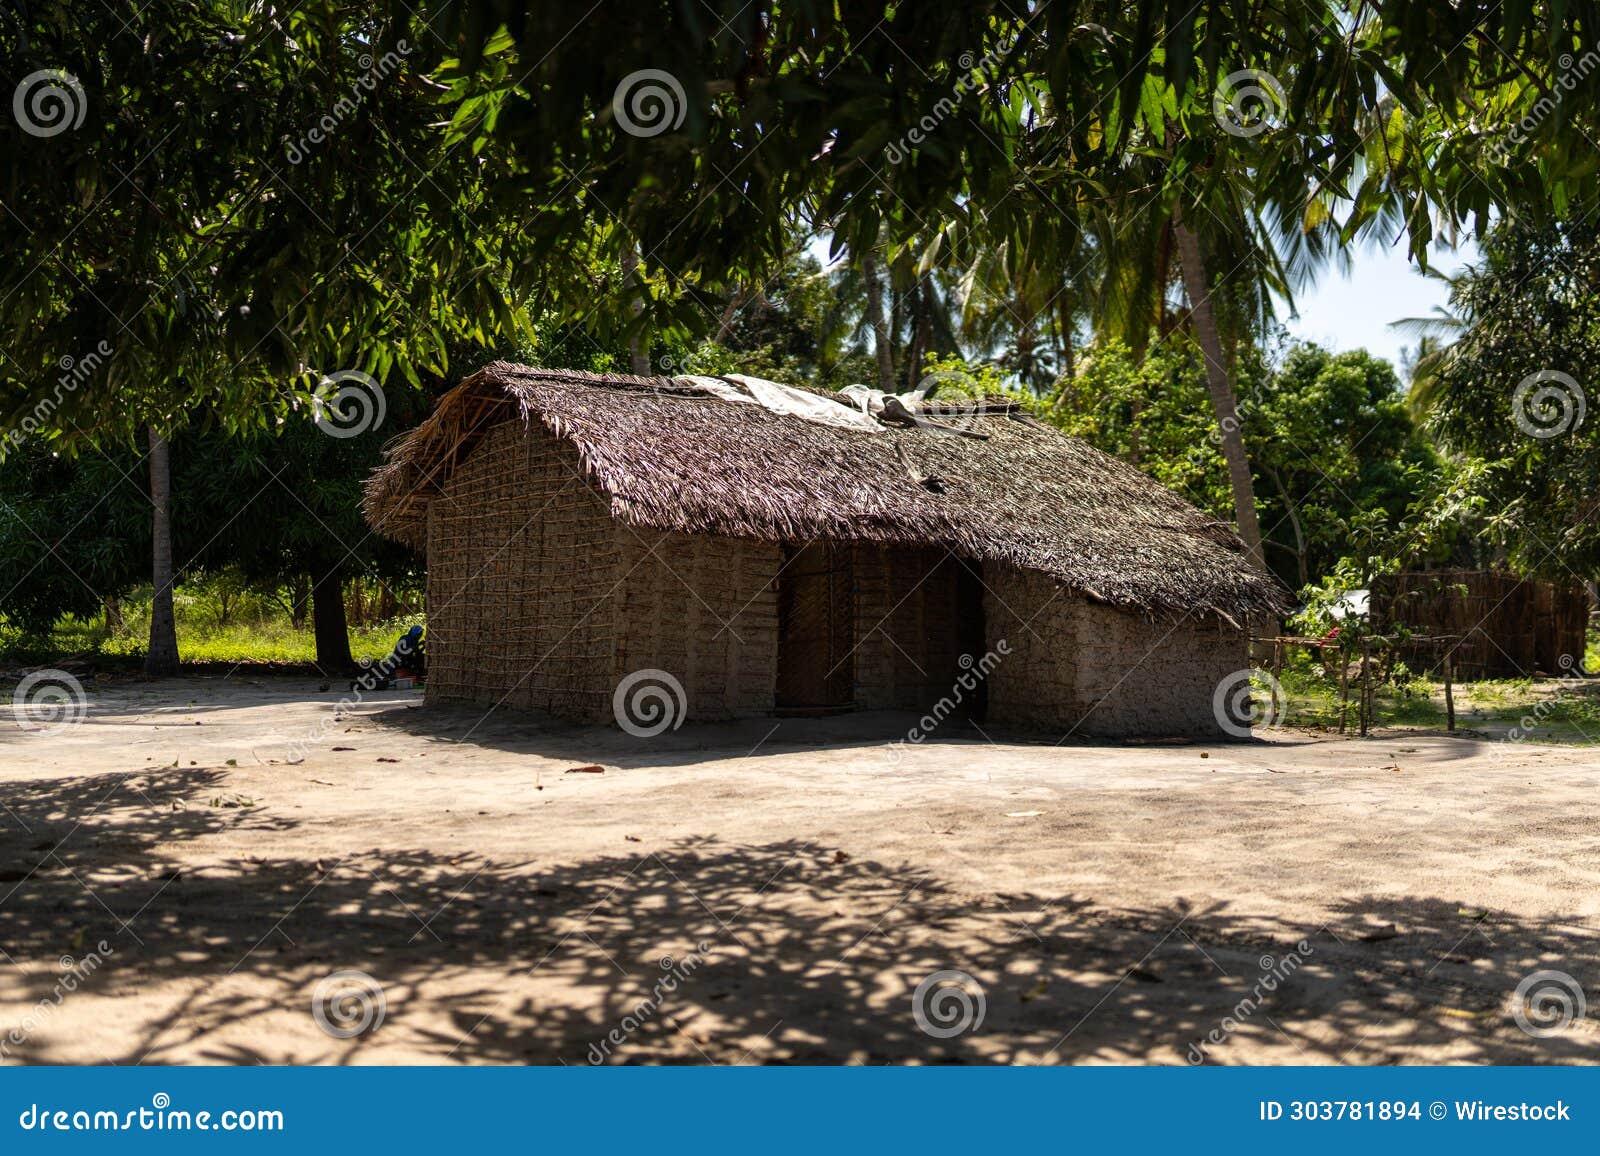 typical house in mocimboa da praia in cabo delgado province, mozambique